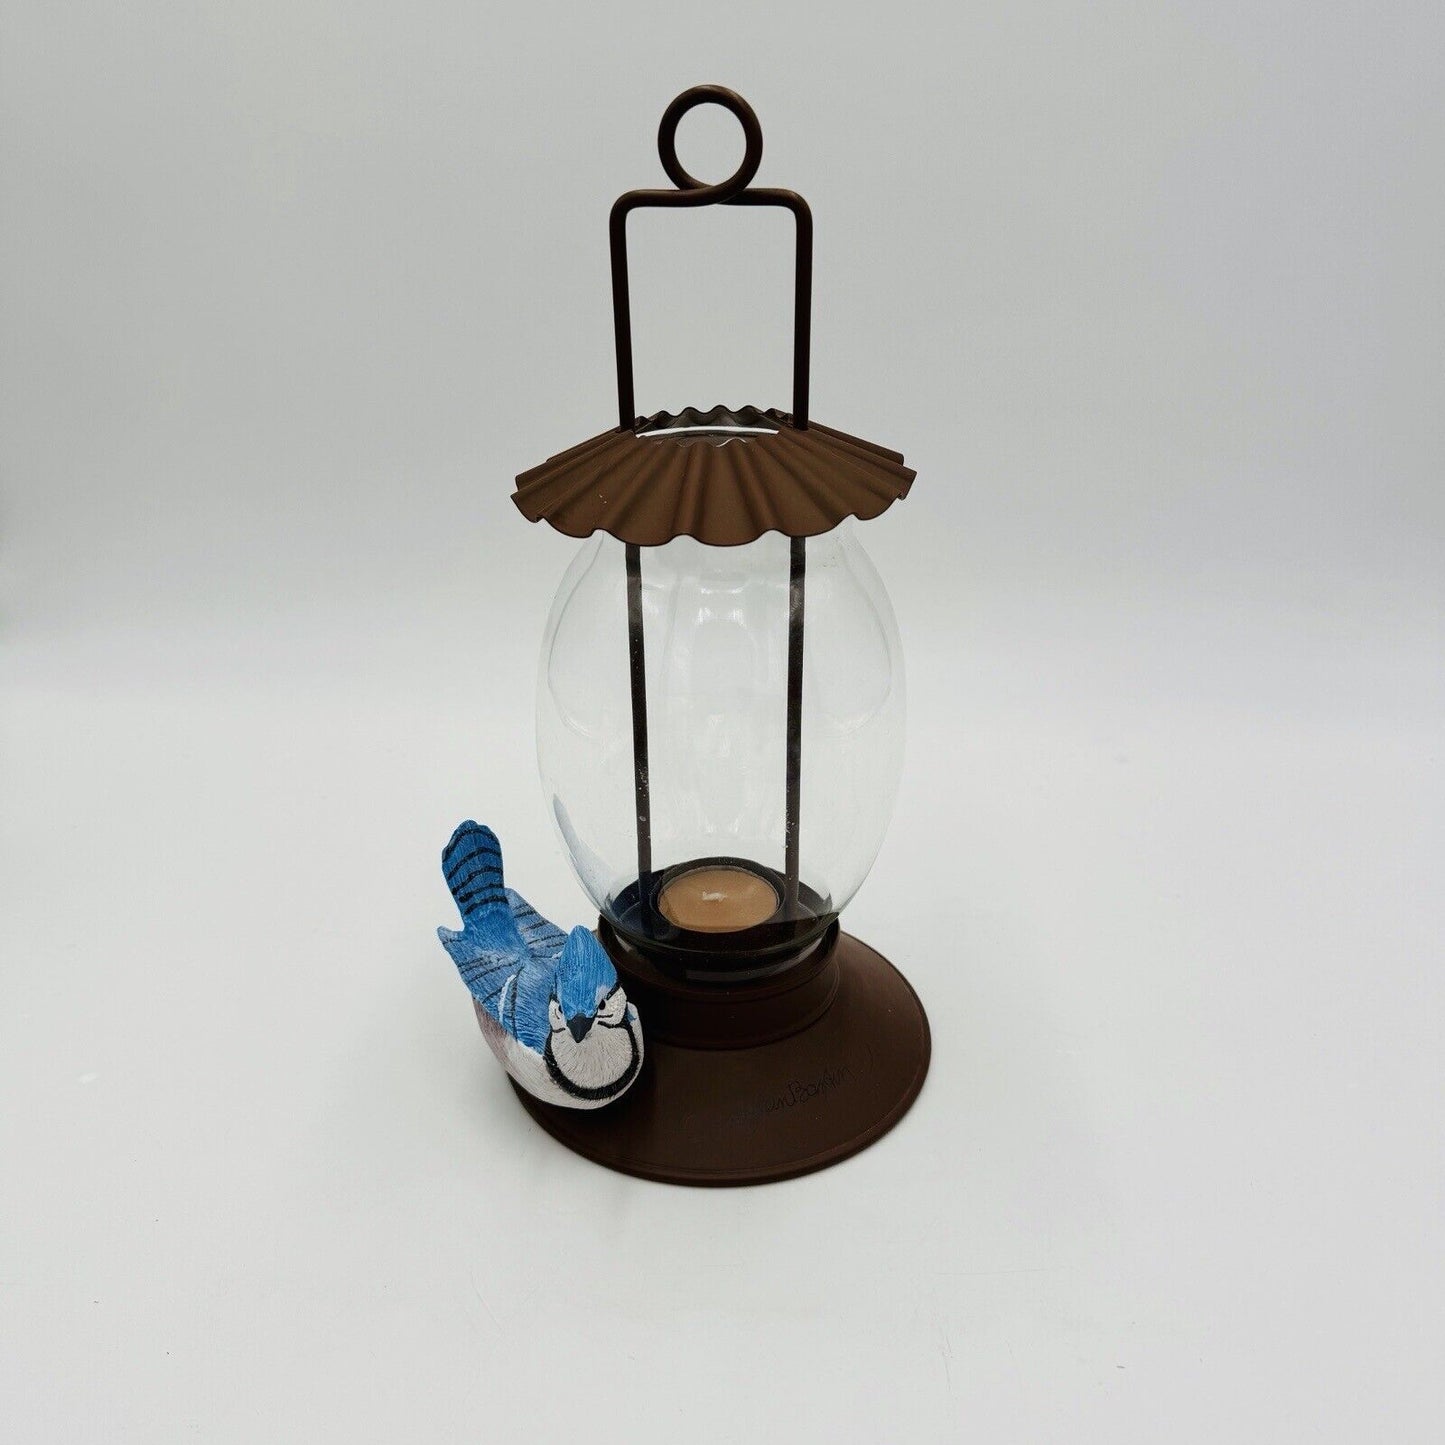 Hallmark Marjolein Bastin votive candle holder bird feeder lantern blue jay